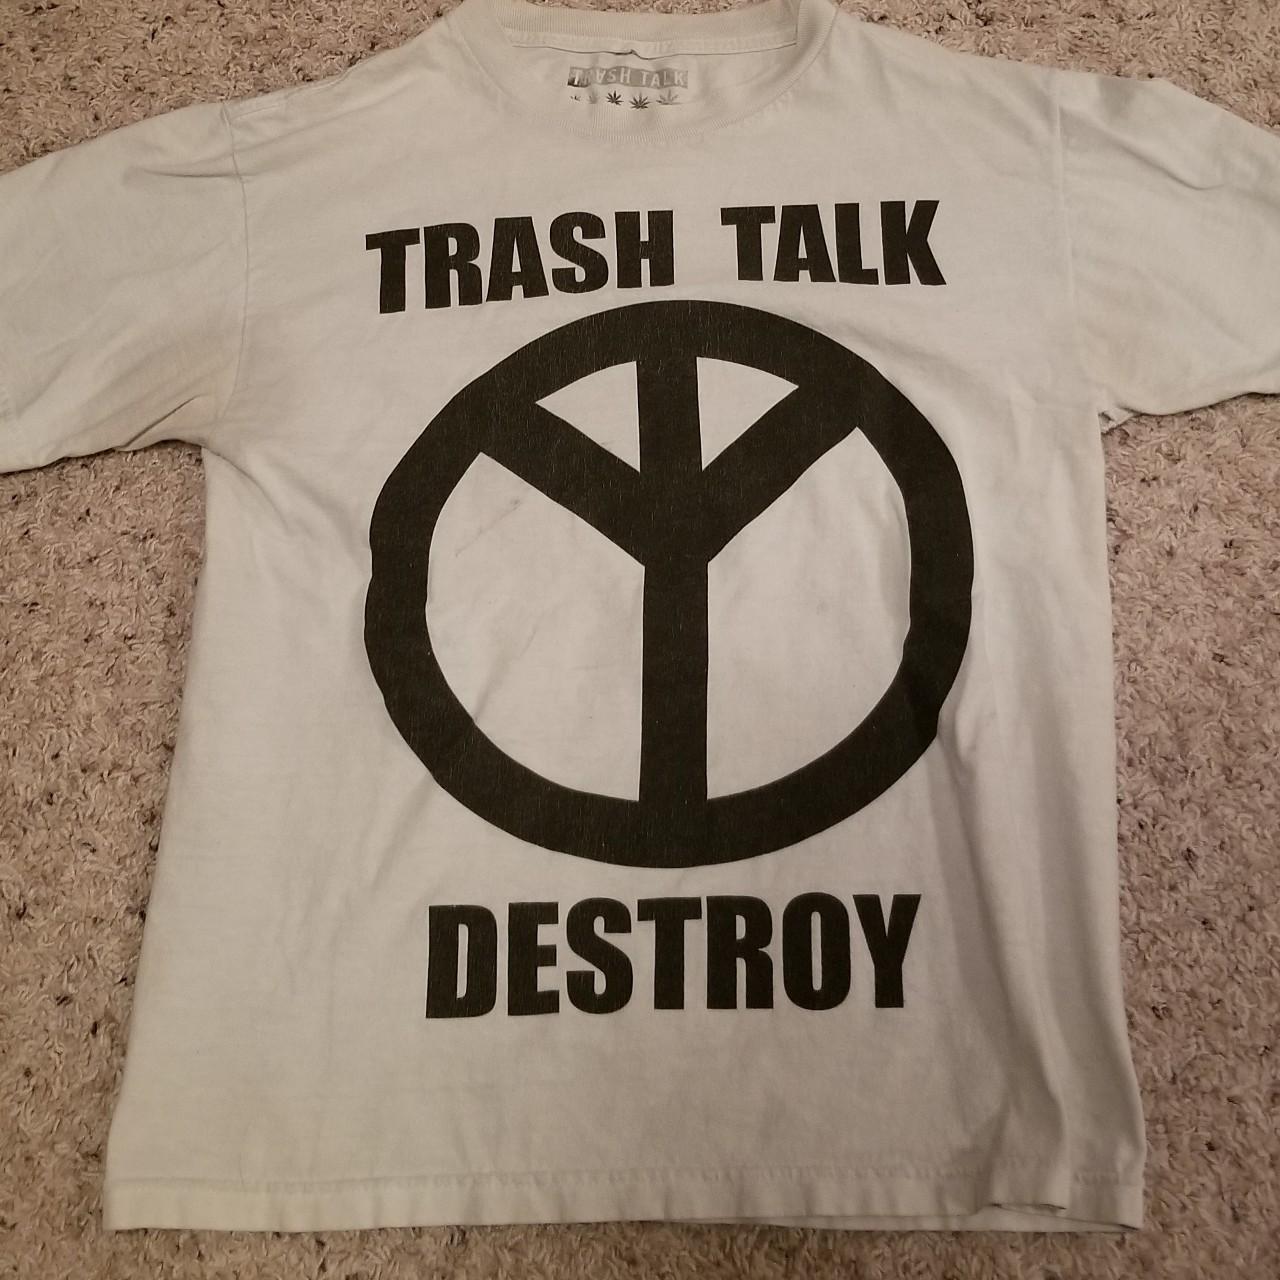 Destroying Trash Talkers 